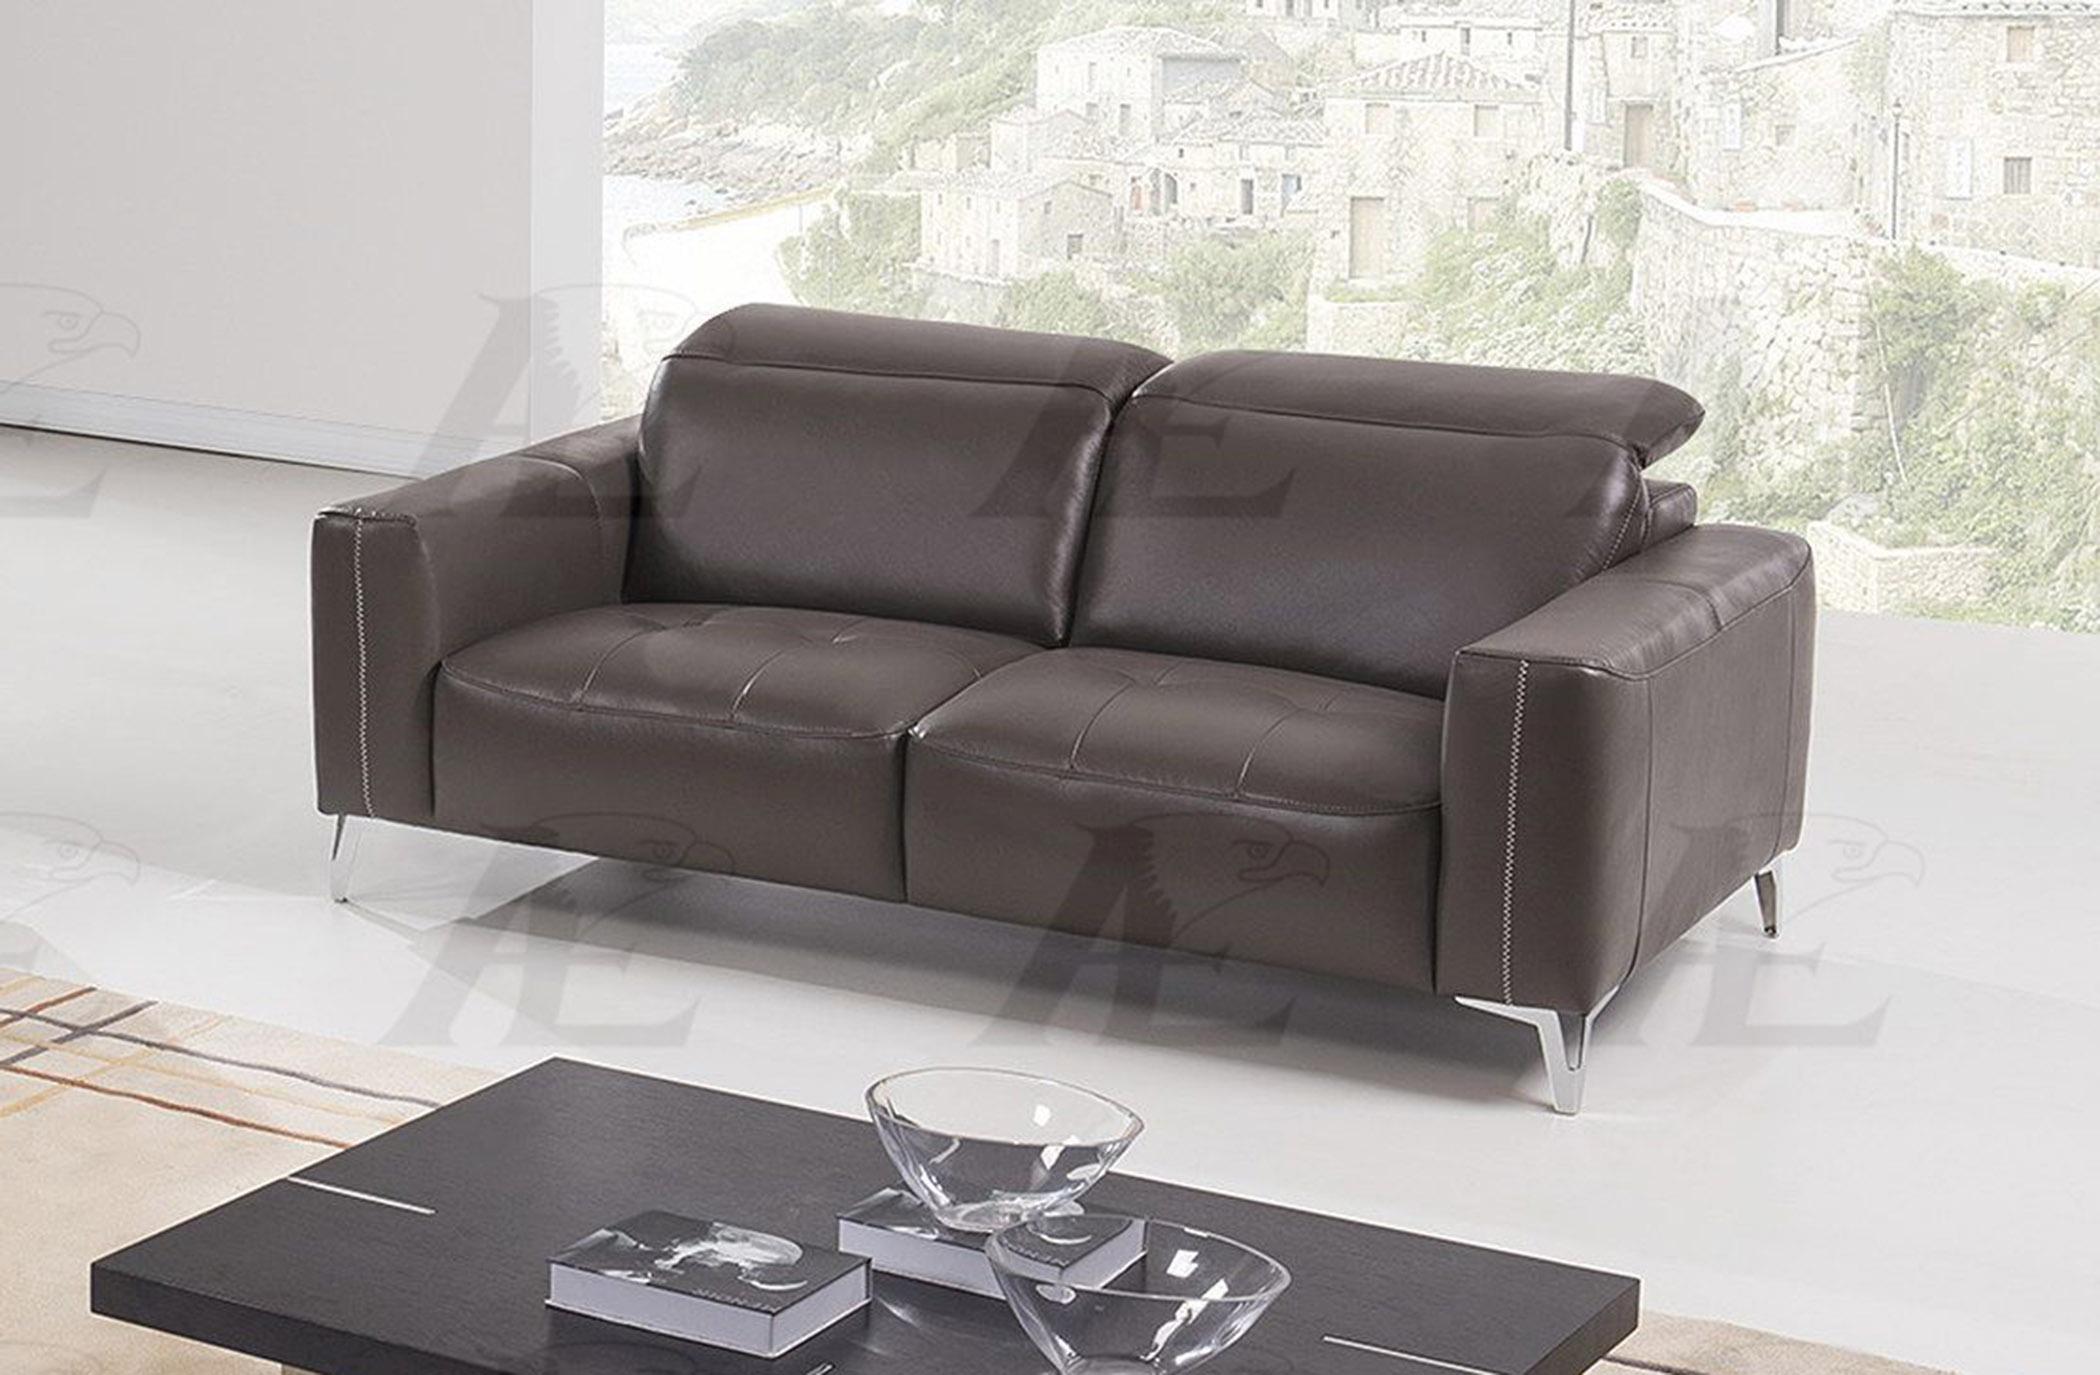 

    
American Eagle Furniture EK069-TPE Taupe Sofa  Italian Full Leather
